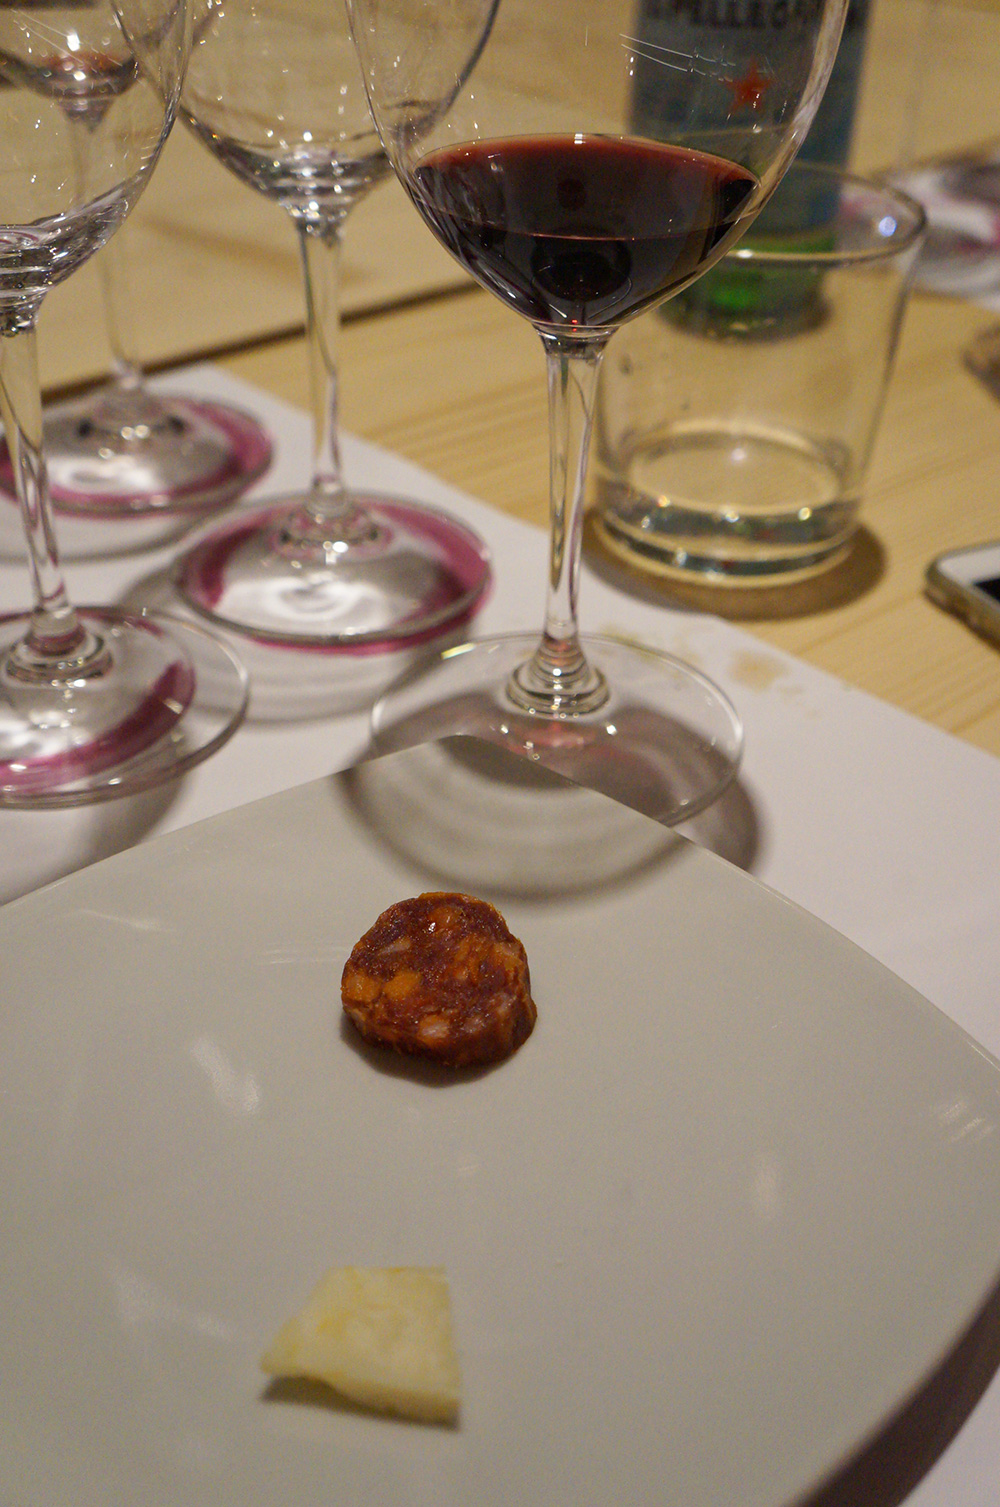 Roma - Itália | Roscioli Rimessa Lab: Wine Tasting Dinner